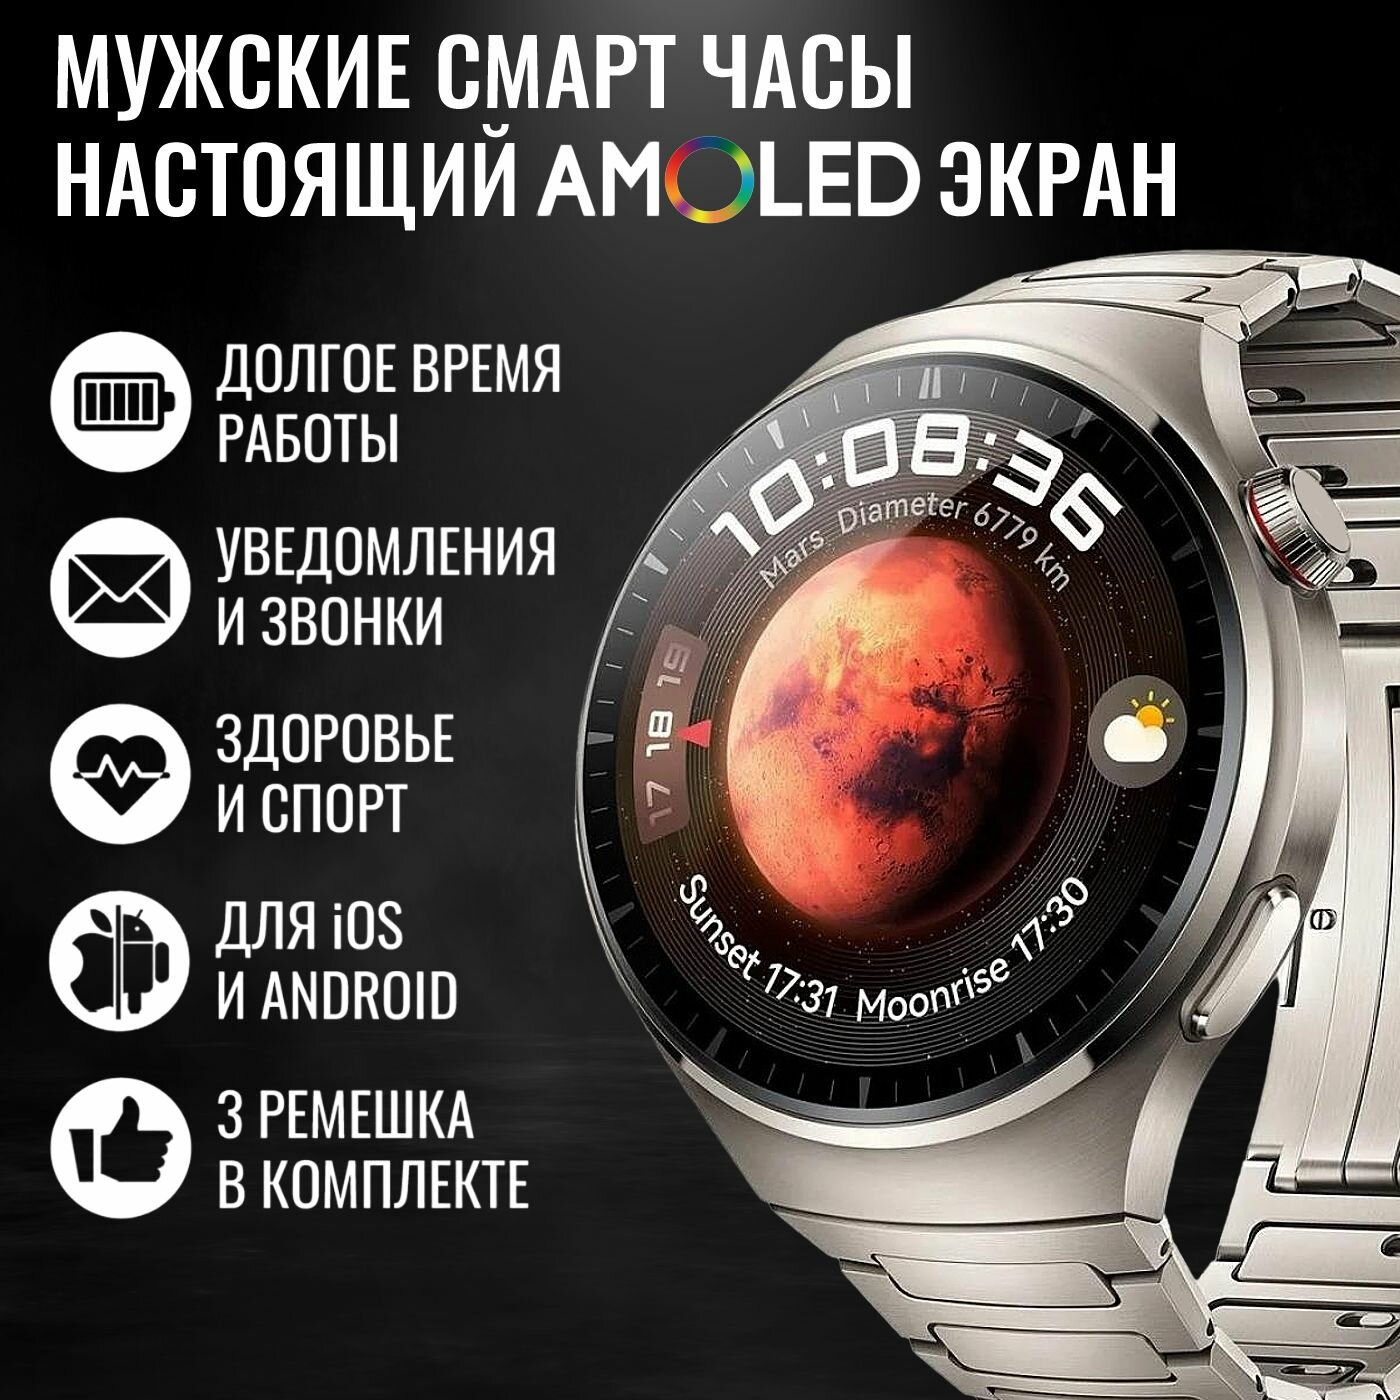 Cмарт часы мужские круглые GoodSmart Smart Watch 4 Pro цвета титан, AMOLED экран, алюминиевый корпус титанового цвета, для Android и iOS, 3 разных съёмных ремешка, полностью на русском, круглые умные часы диaметром 46 мм